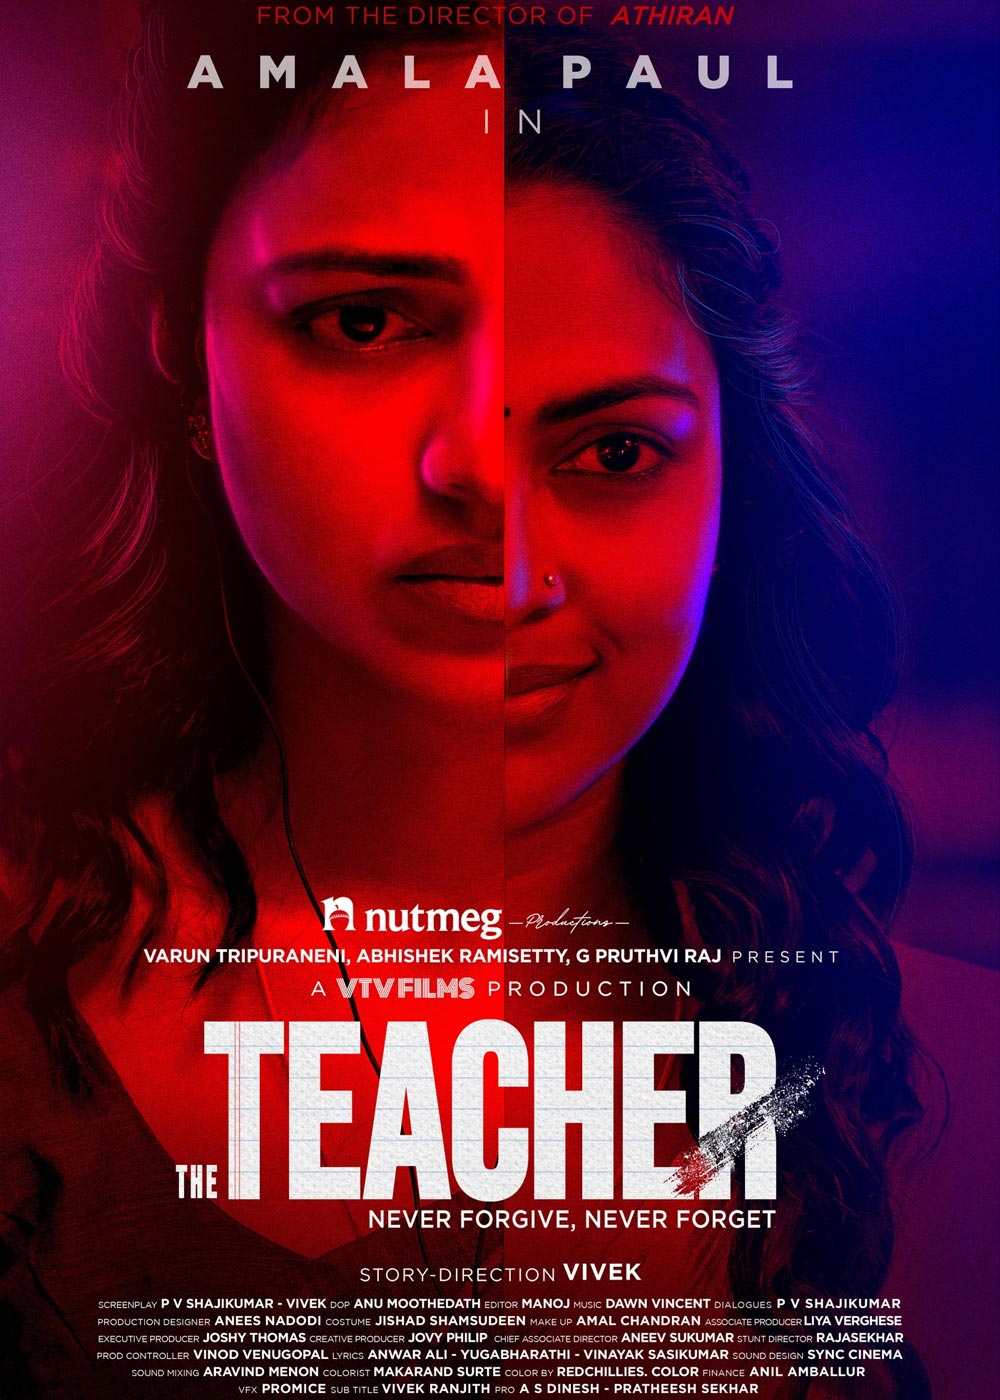 the teacher 2022 tamil movie review